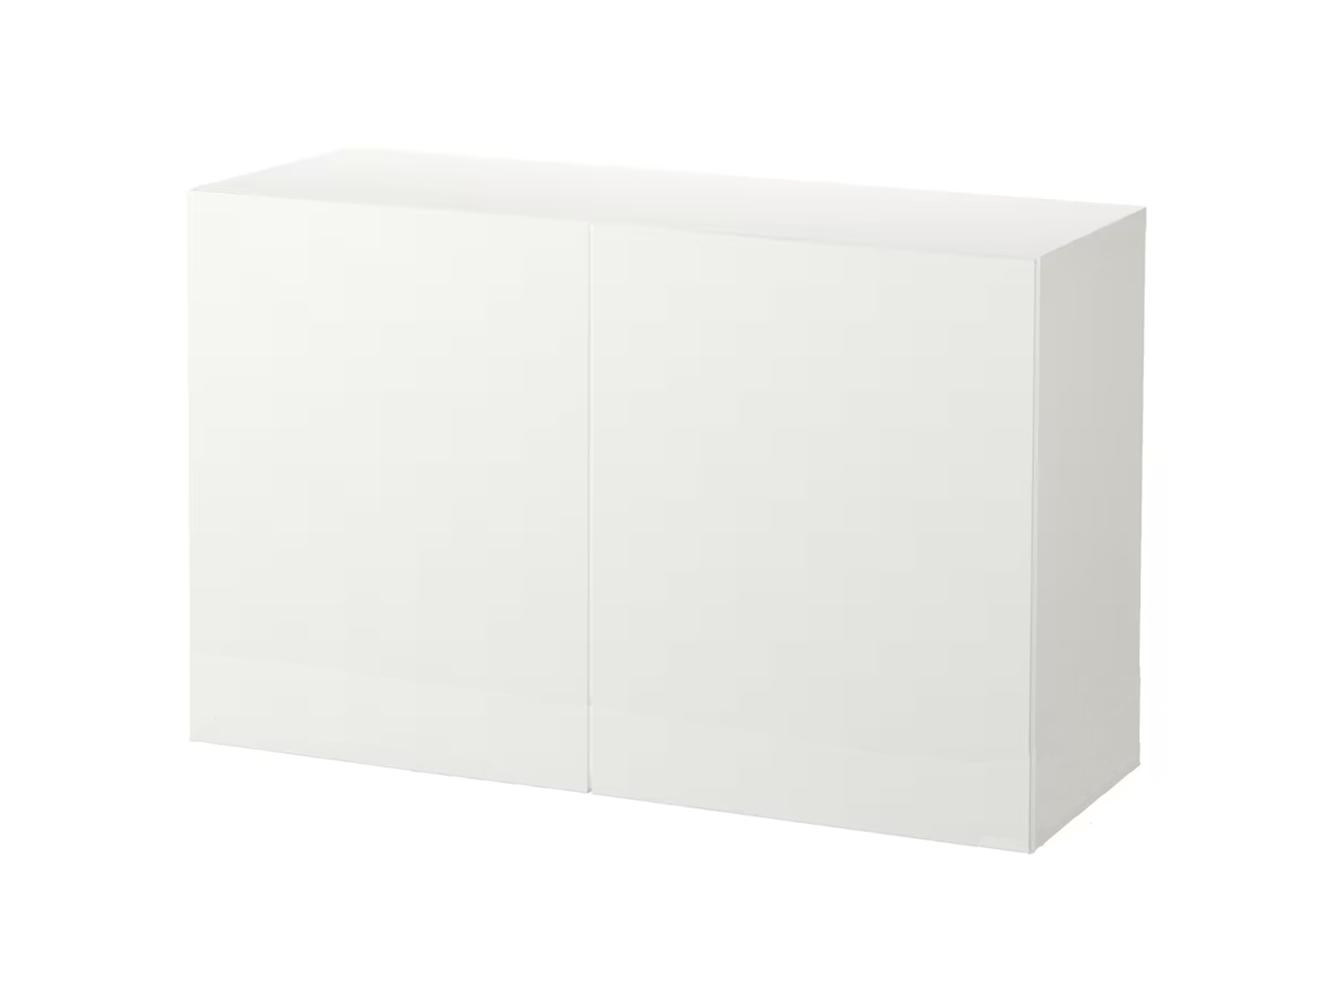 Комод Беста 113 white ИКЕА (IKEA)  изображение товара